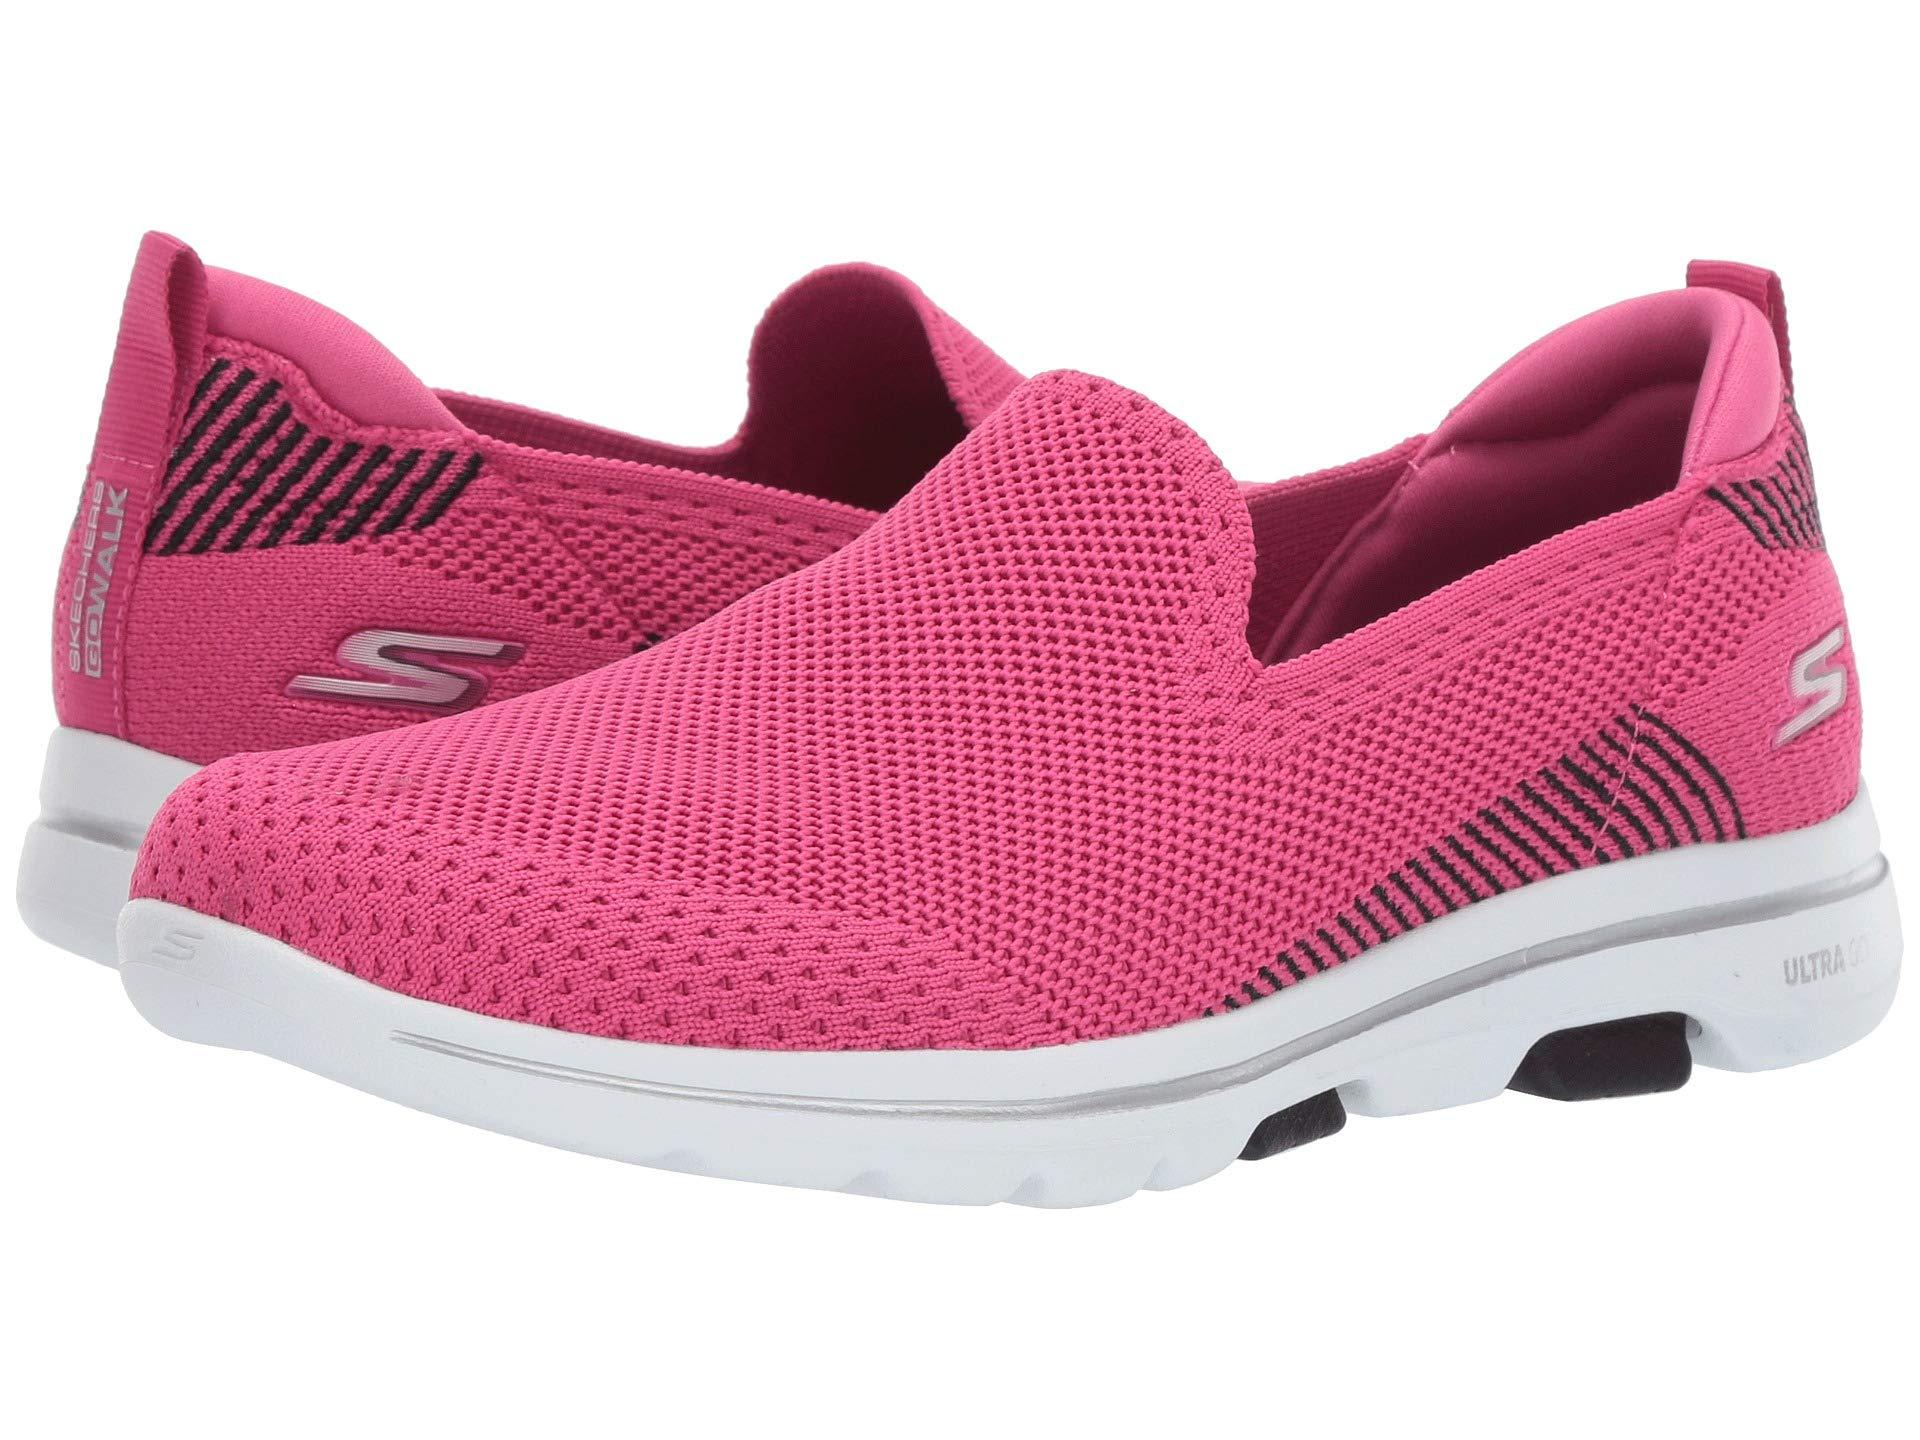 Skechers Go Walk 5-prized Sneaker in Pink/Black (Pink) - Lyst